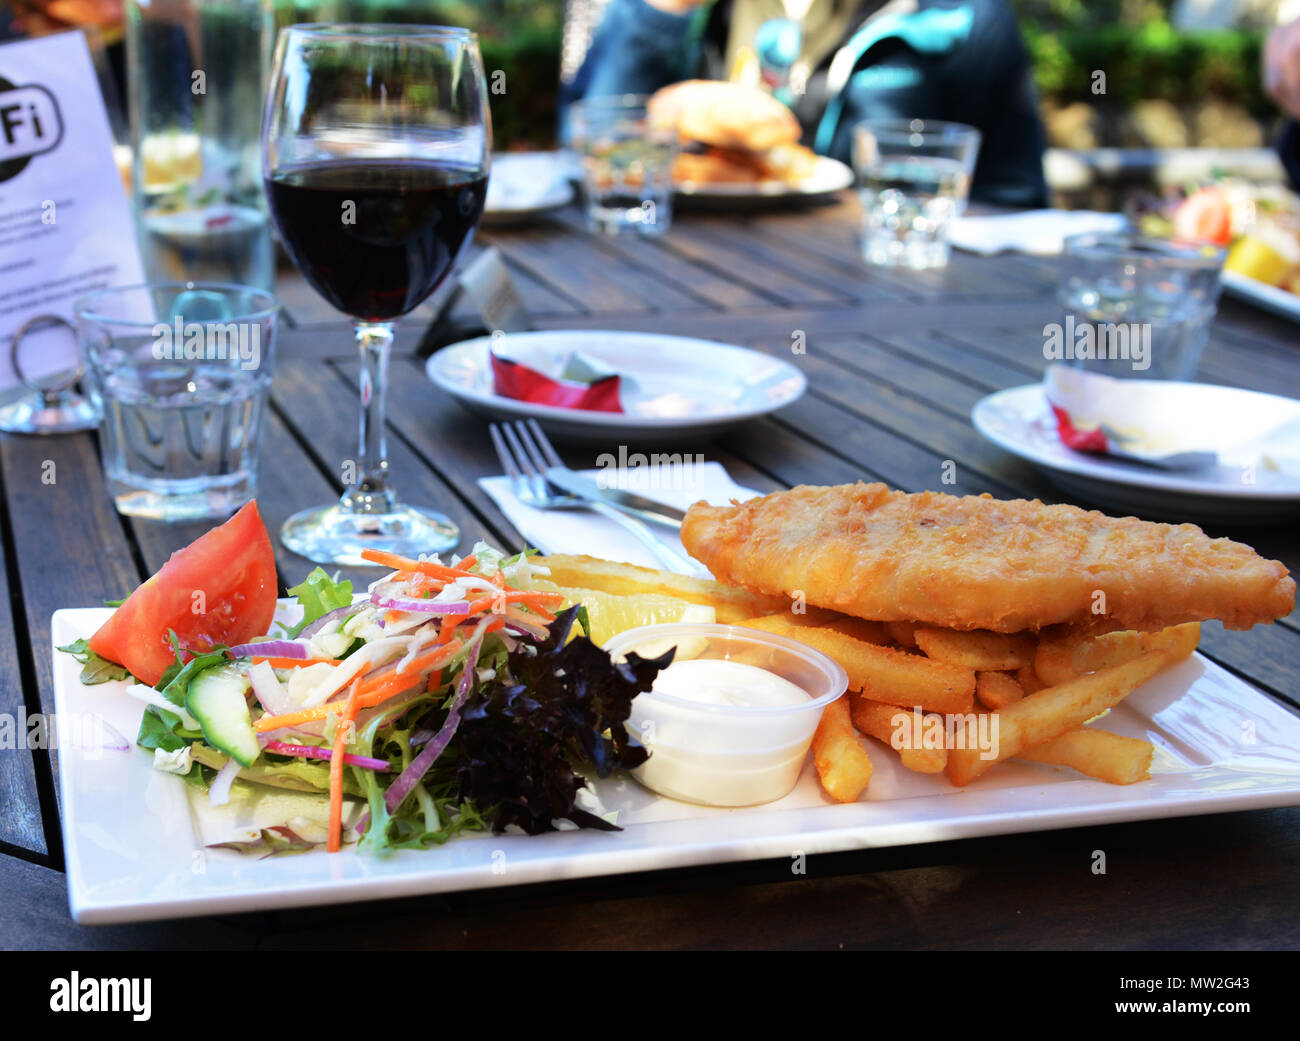 Ein barramundi Fish und Chips Schüssel serviert mit Salat und einem Glas Rotwein. Stockfoto